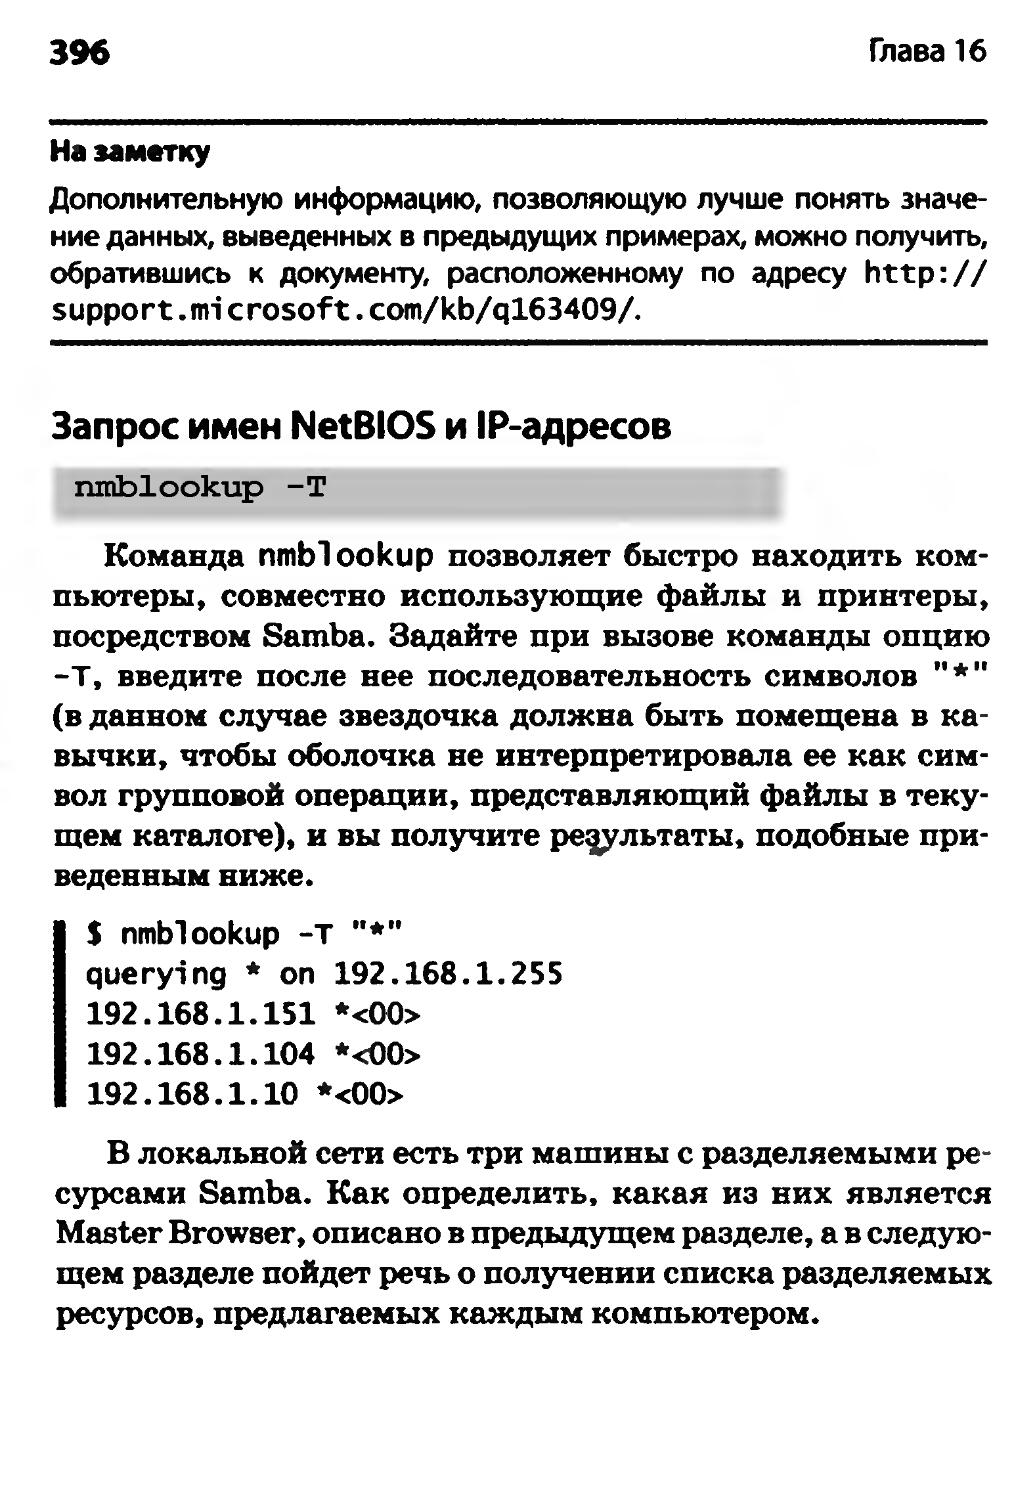 Запрос имен NetBIOS и IP-адресов